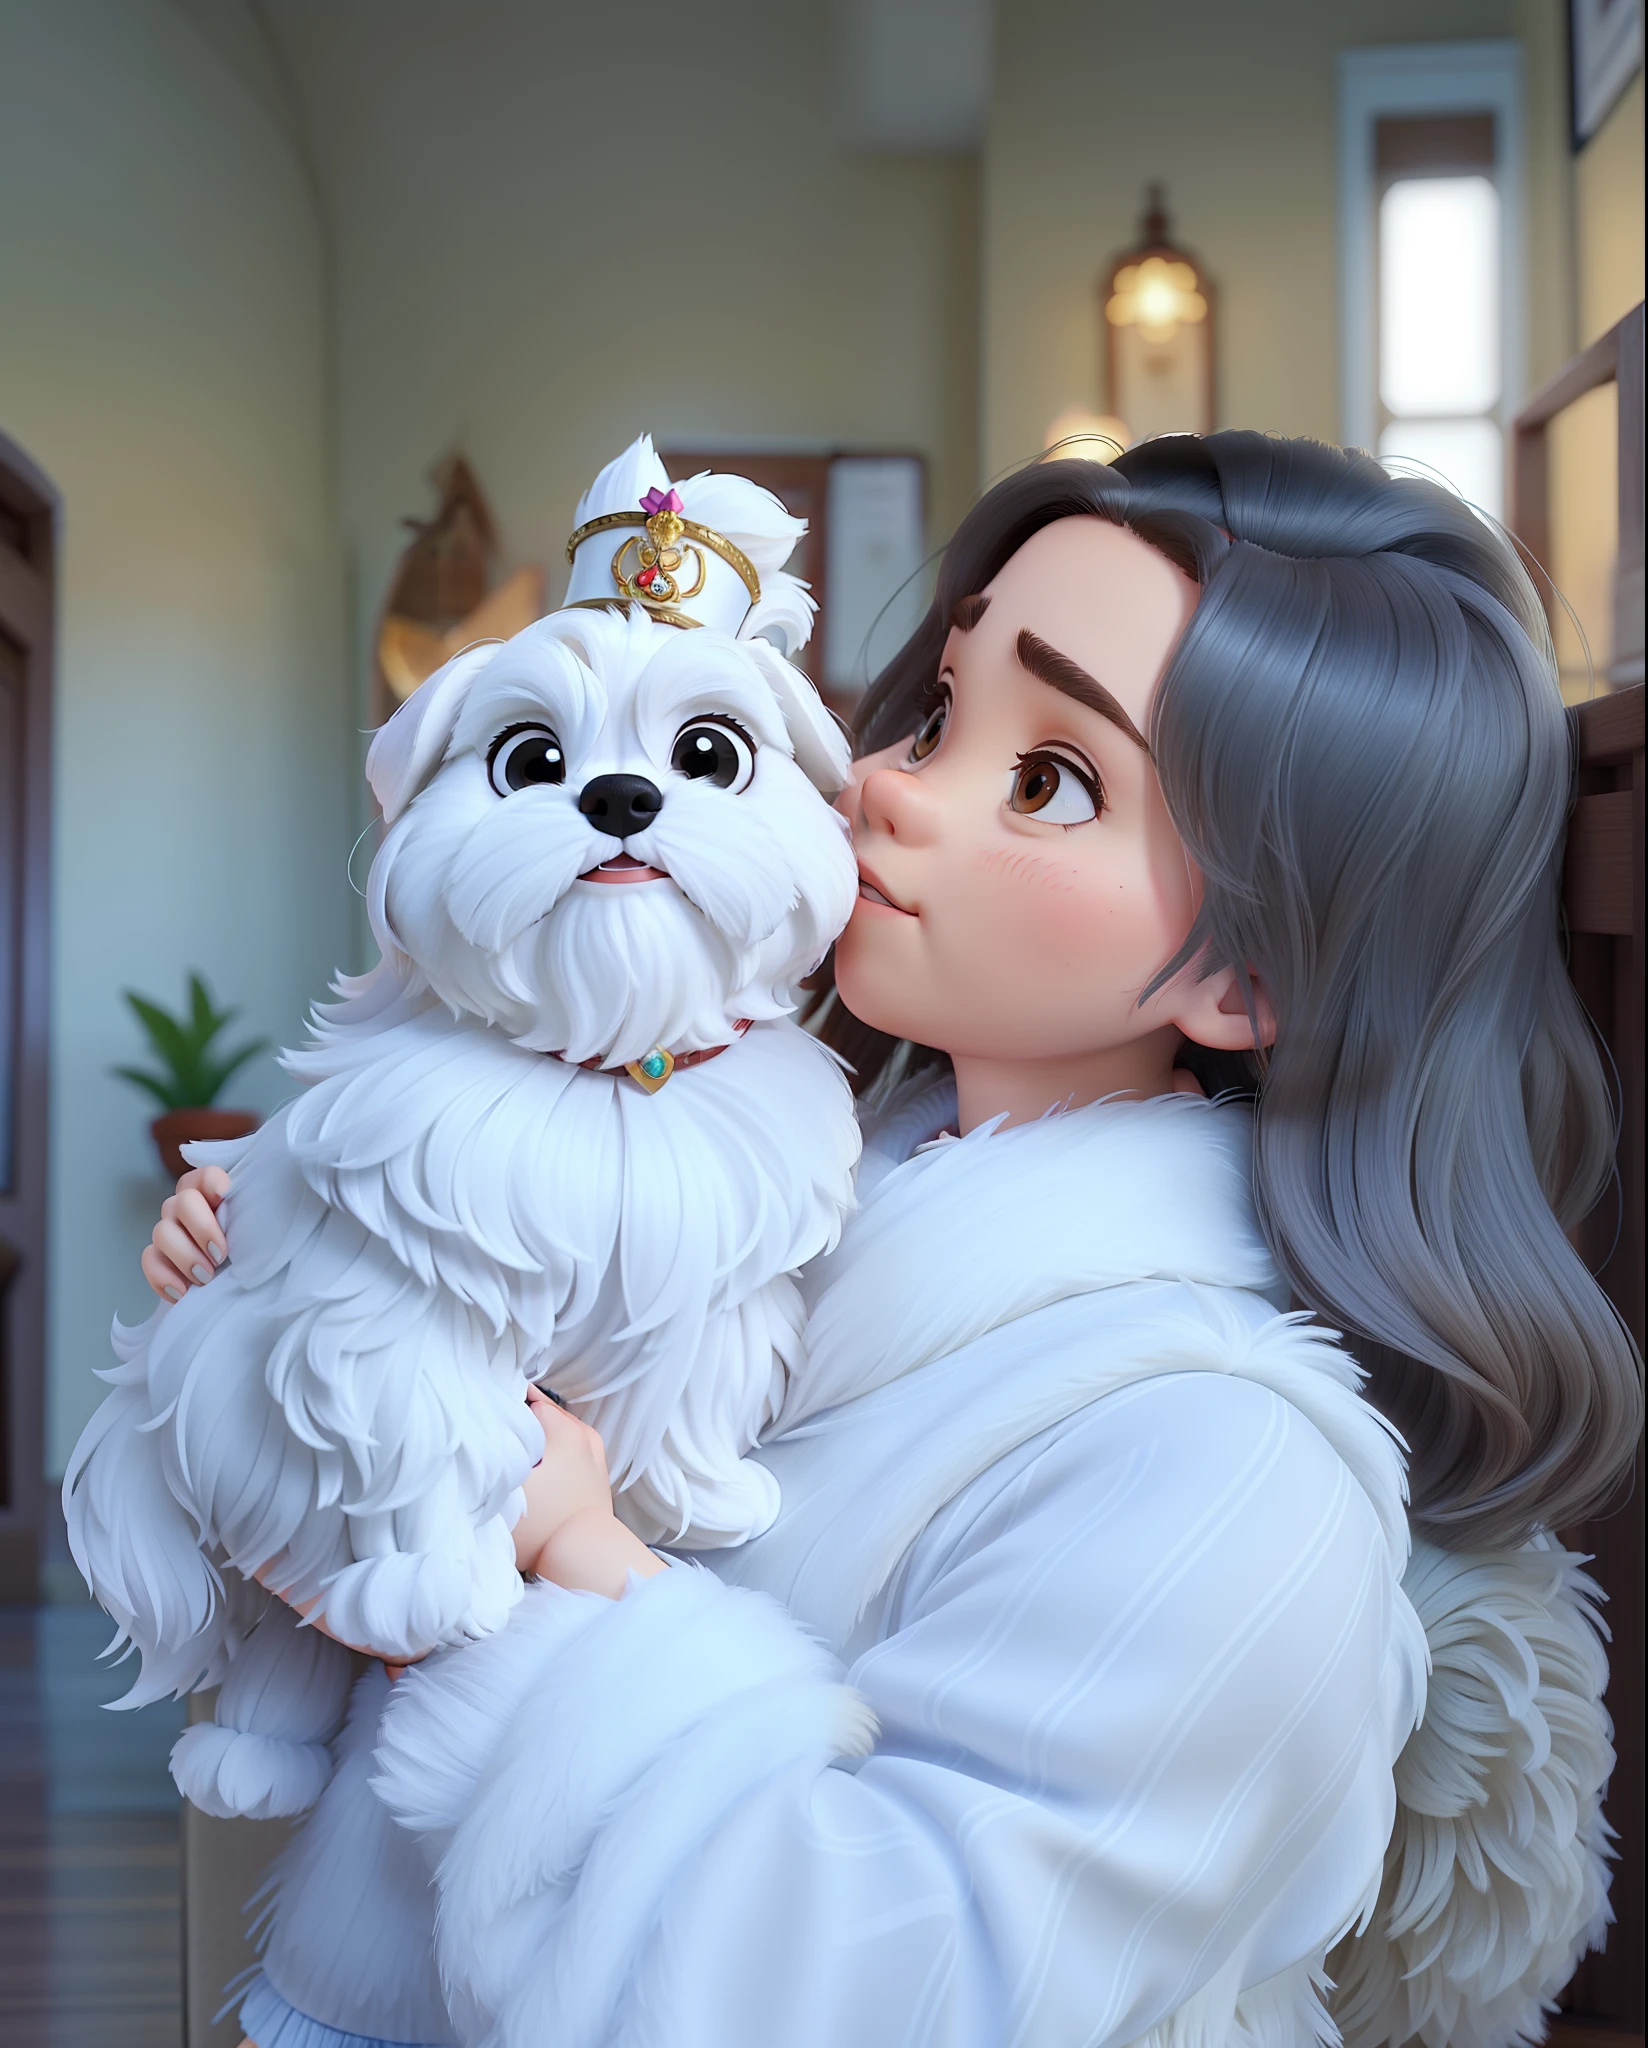 Une jeune femme de 25 ans en blouse blanche, tenant votre Shih Tzu, Shih Tzu, Petit chien blanc sur les genoux, À la manière de Disney-Pixar, haute qualité, meilleure qualité